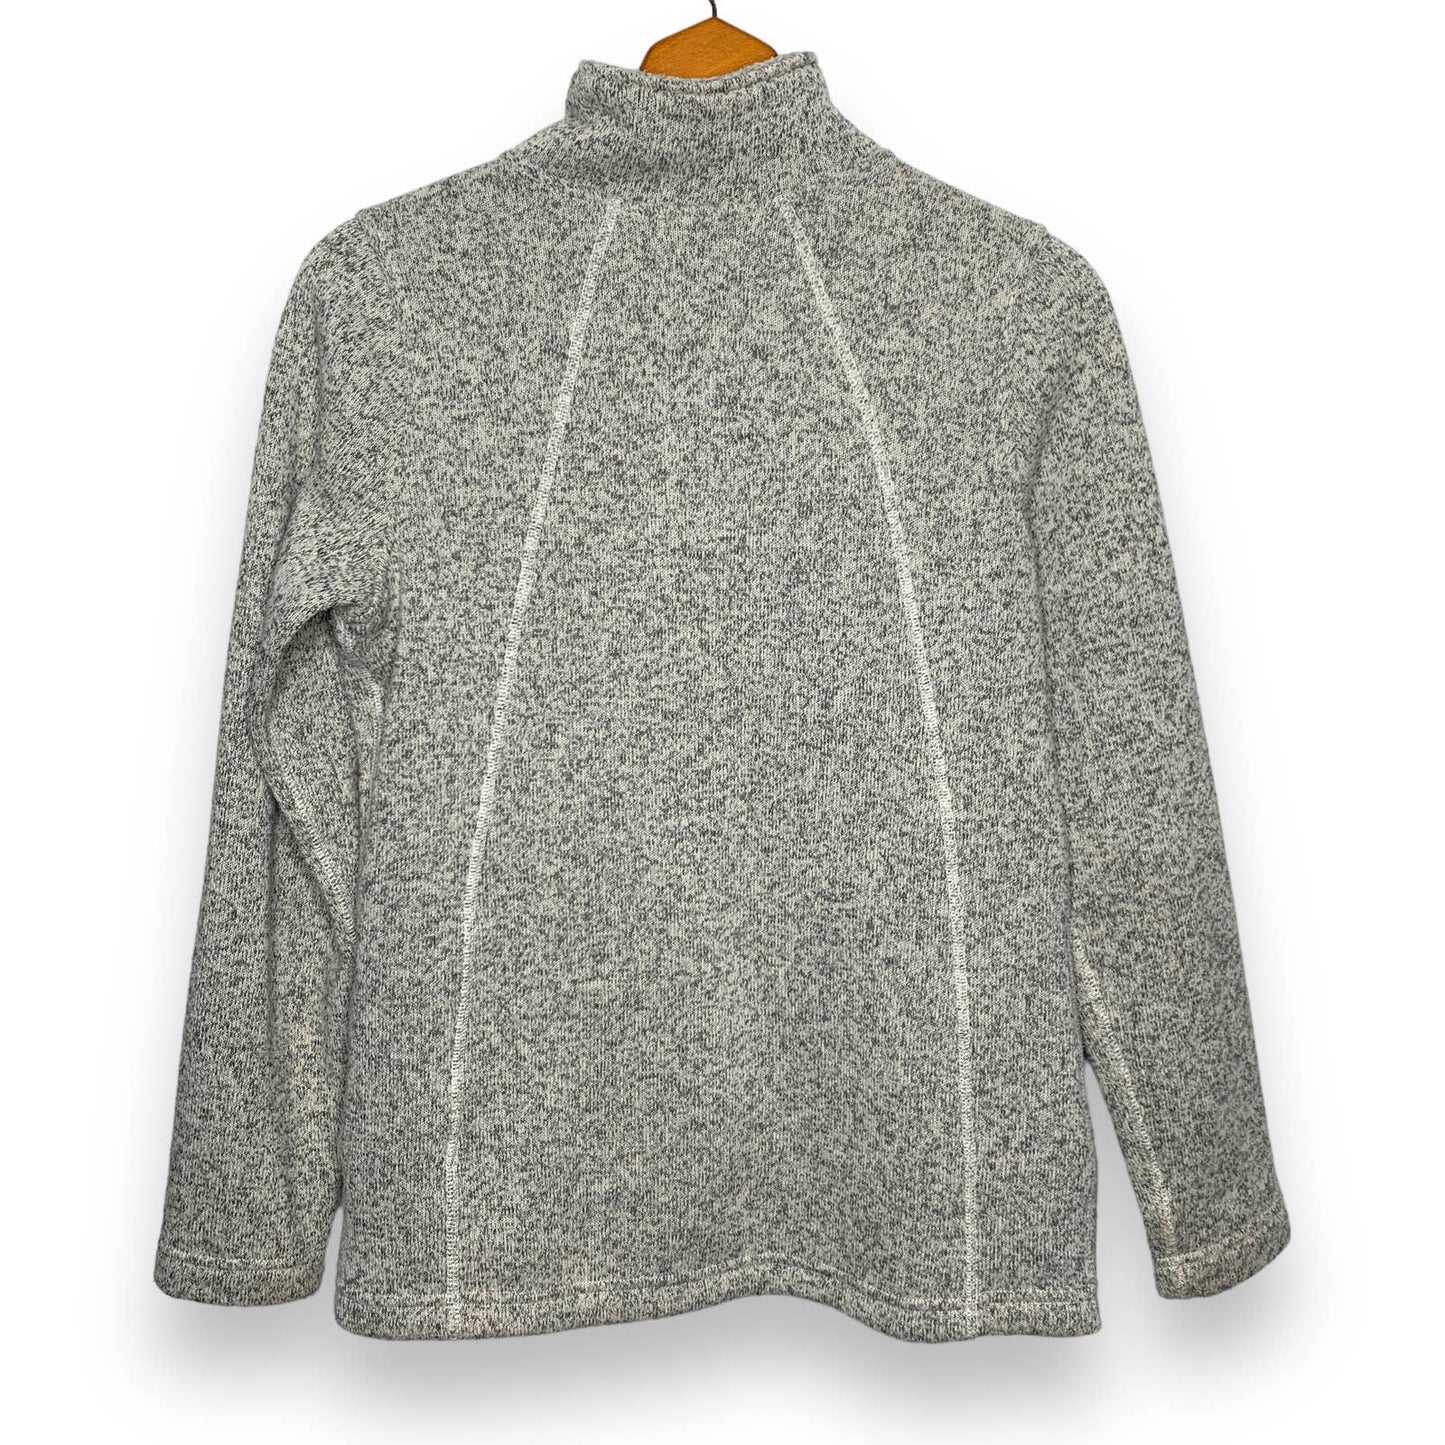 Crescent full zip sweater fleece jacket SZ S